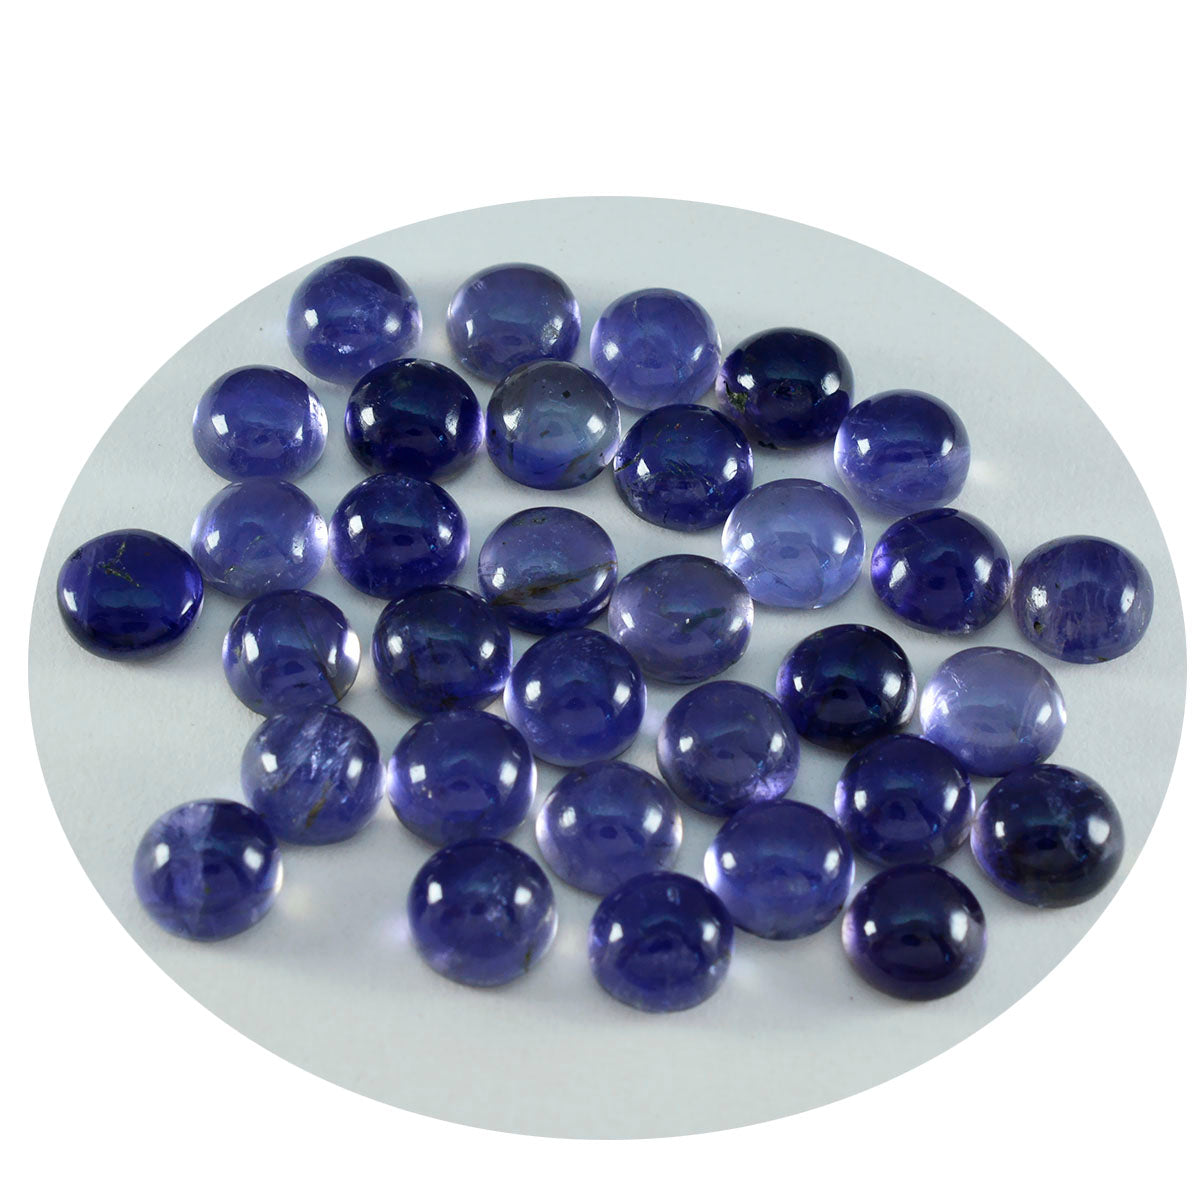 Riyogems 1 pieza cabujón de iolita azul 7x7 mm forma redonda a+ calidad gema suelta